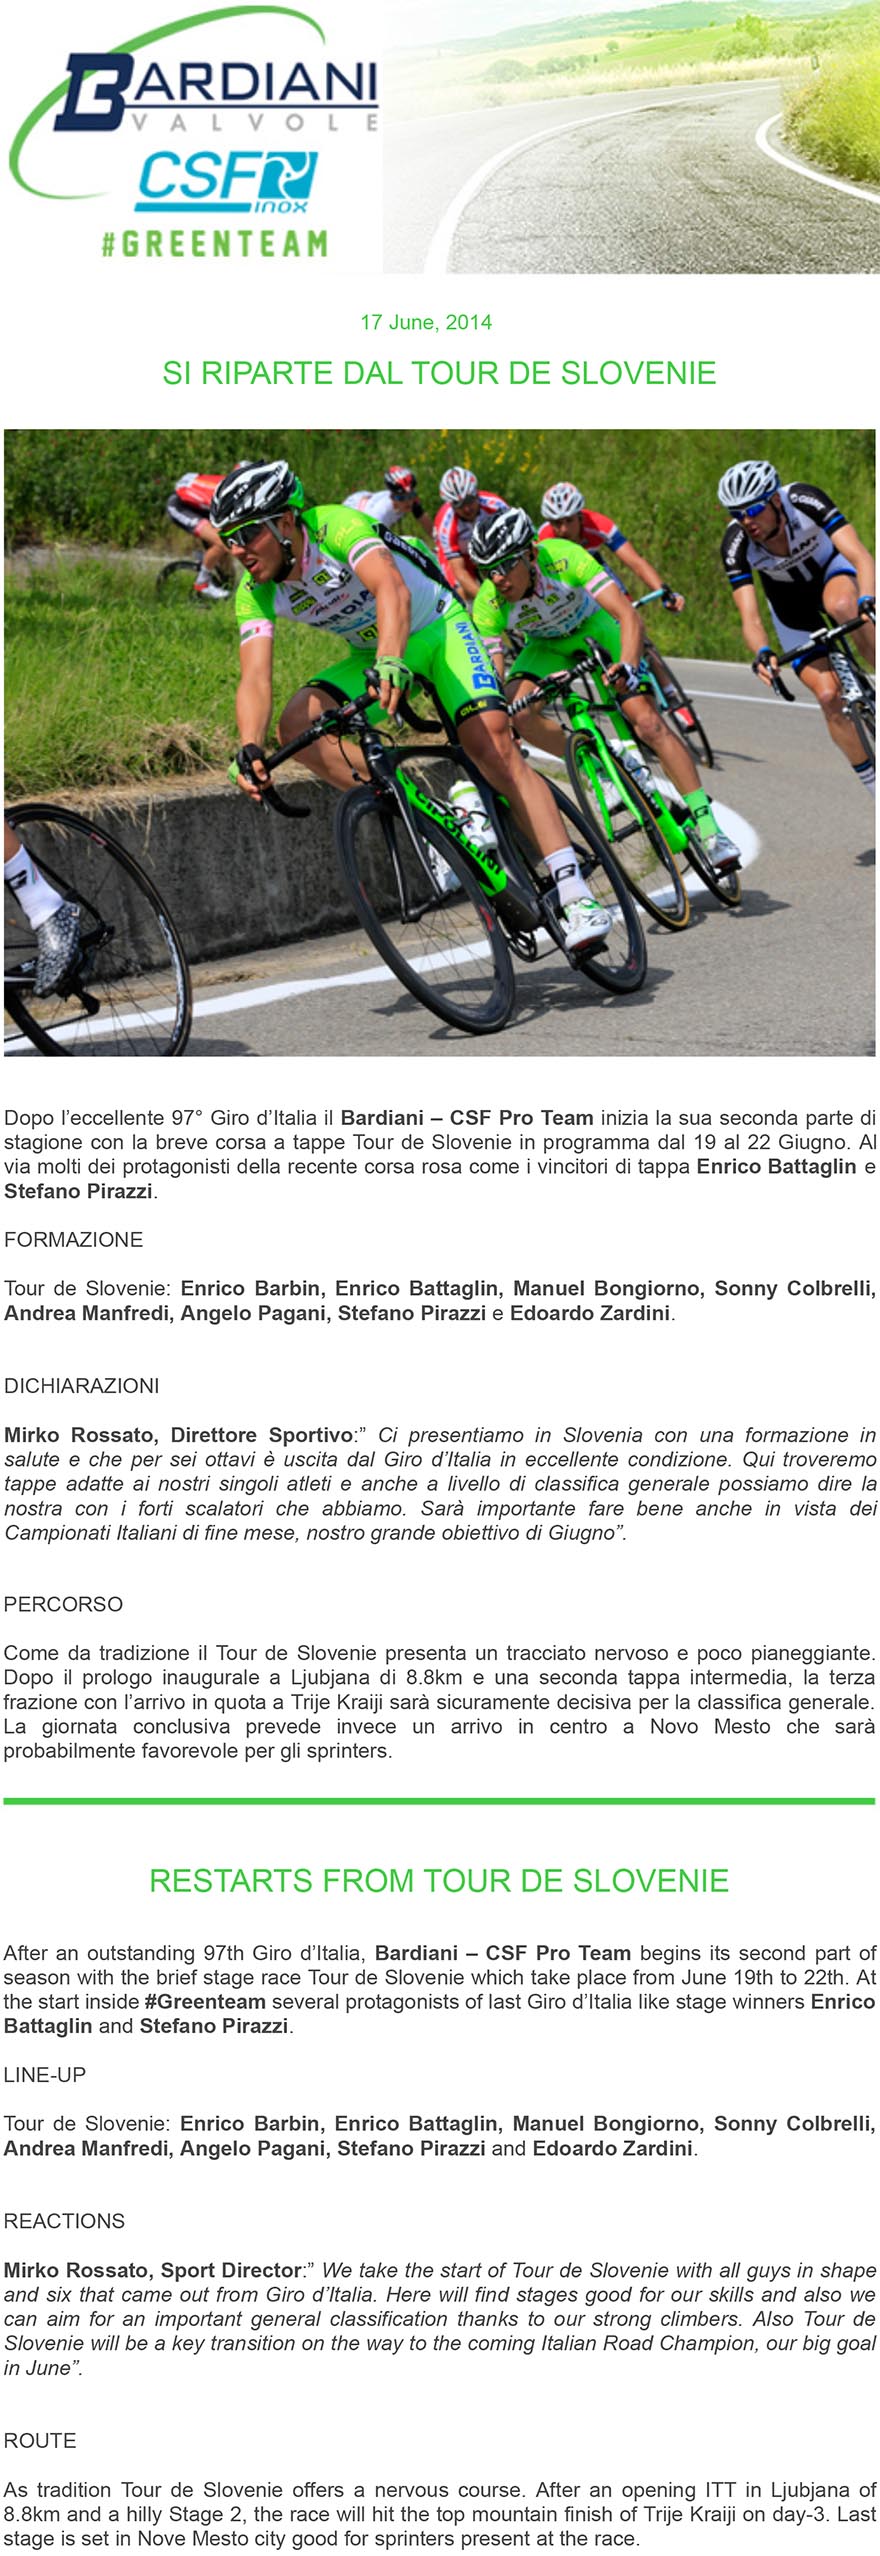 ttaglin, Bongiorno, Colbrelli,
Pirazzi e Zardini a caccia di successo al Tour de Slovenie